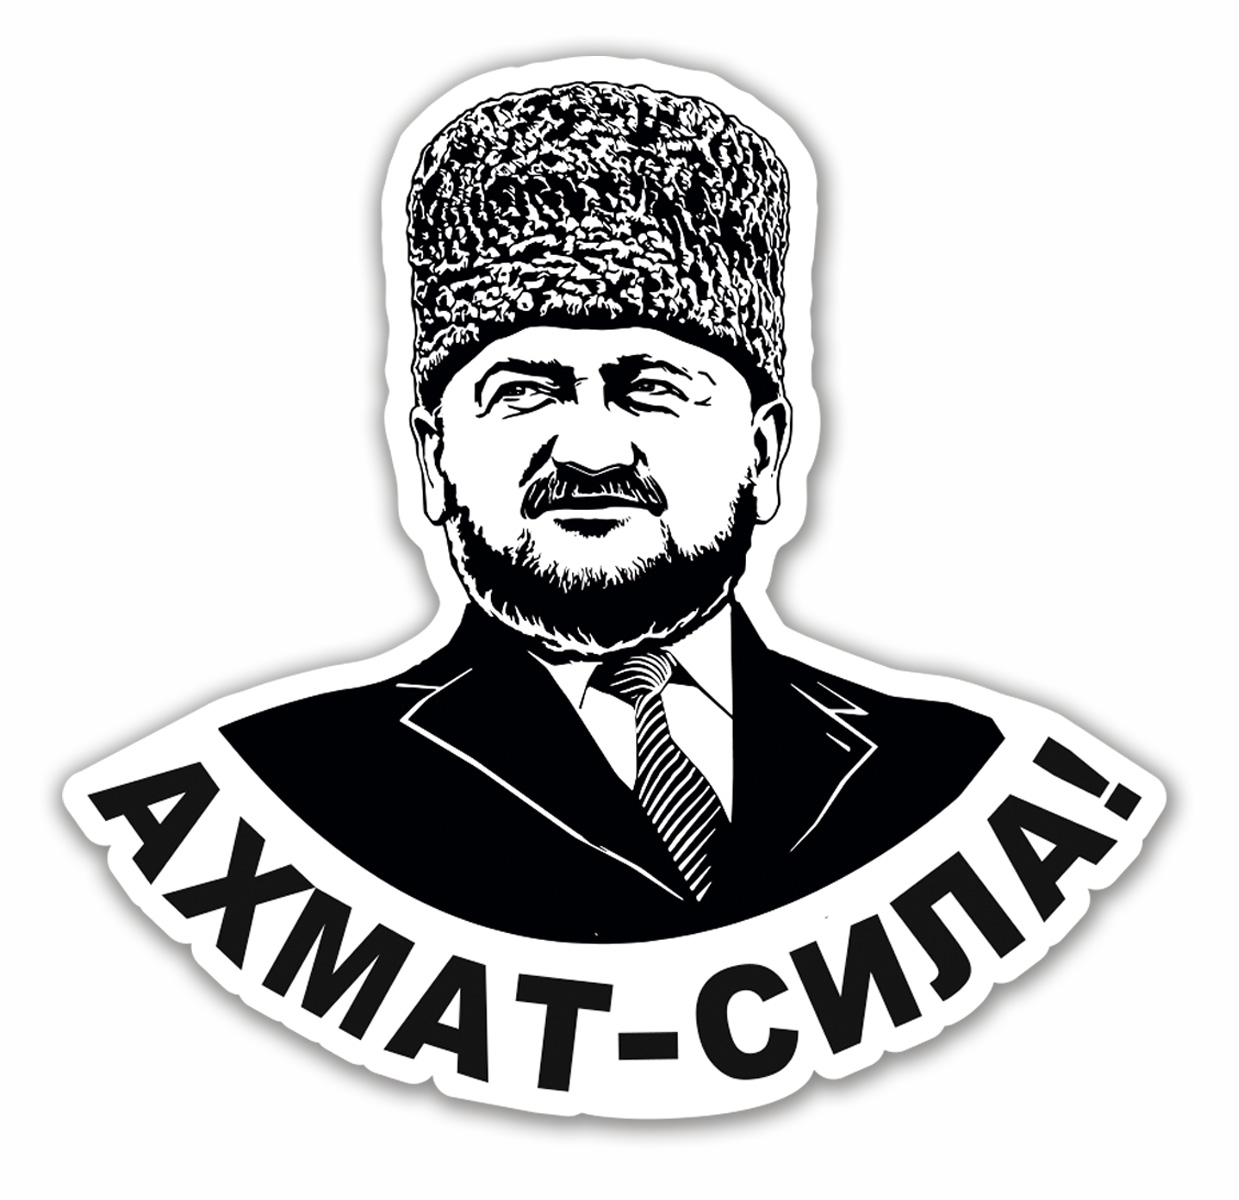 Автонаклейка "Ахмат - Сила!" с портретом Ахмата Кадырова - размер